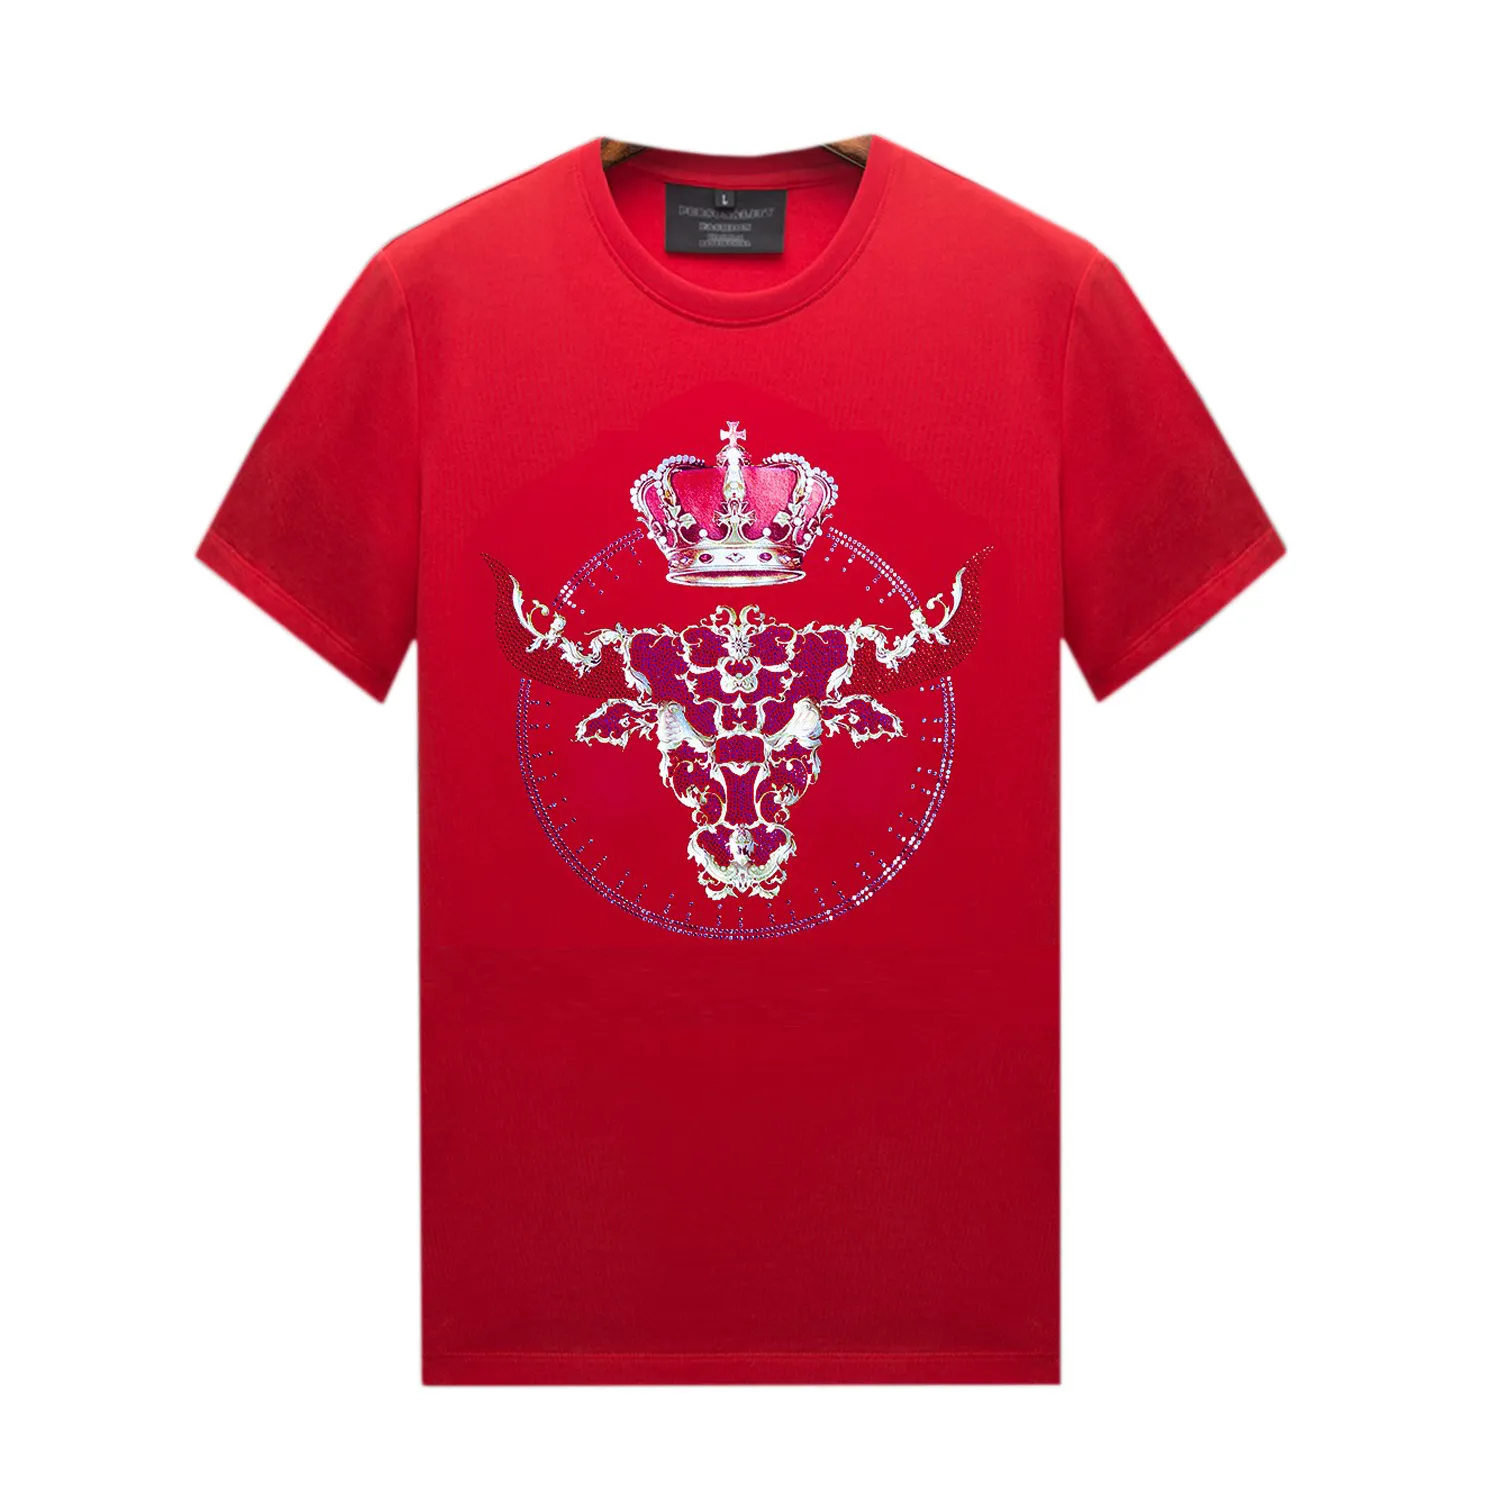 Camisetas de imitaci￳n de diamantes de diez dianosa para hombres con dise￱os - mangas cortas rojas Tops casuales algod￳n mercerizado